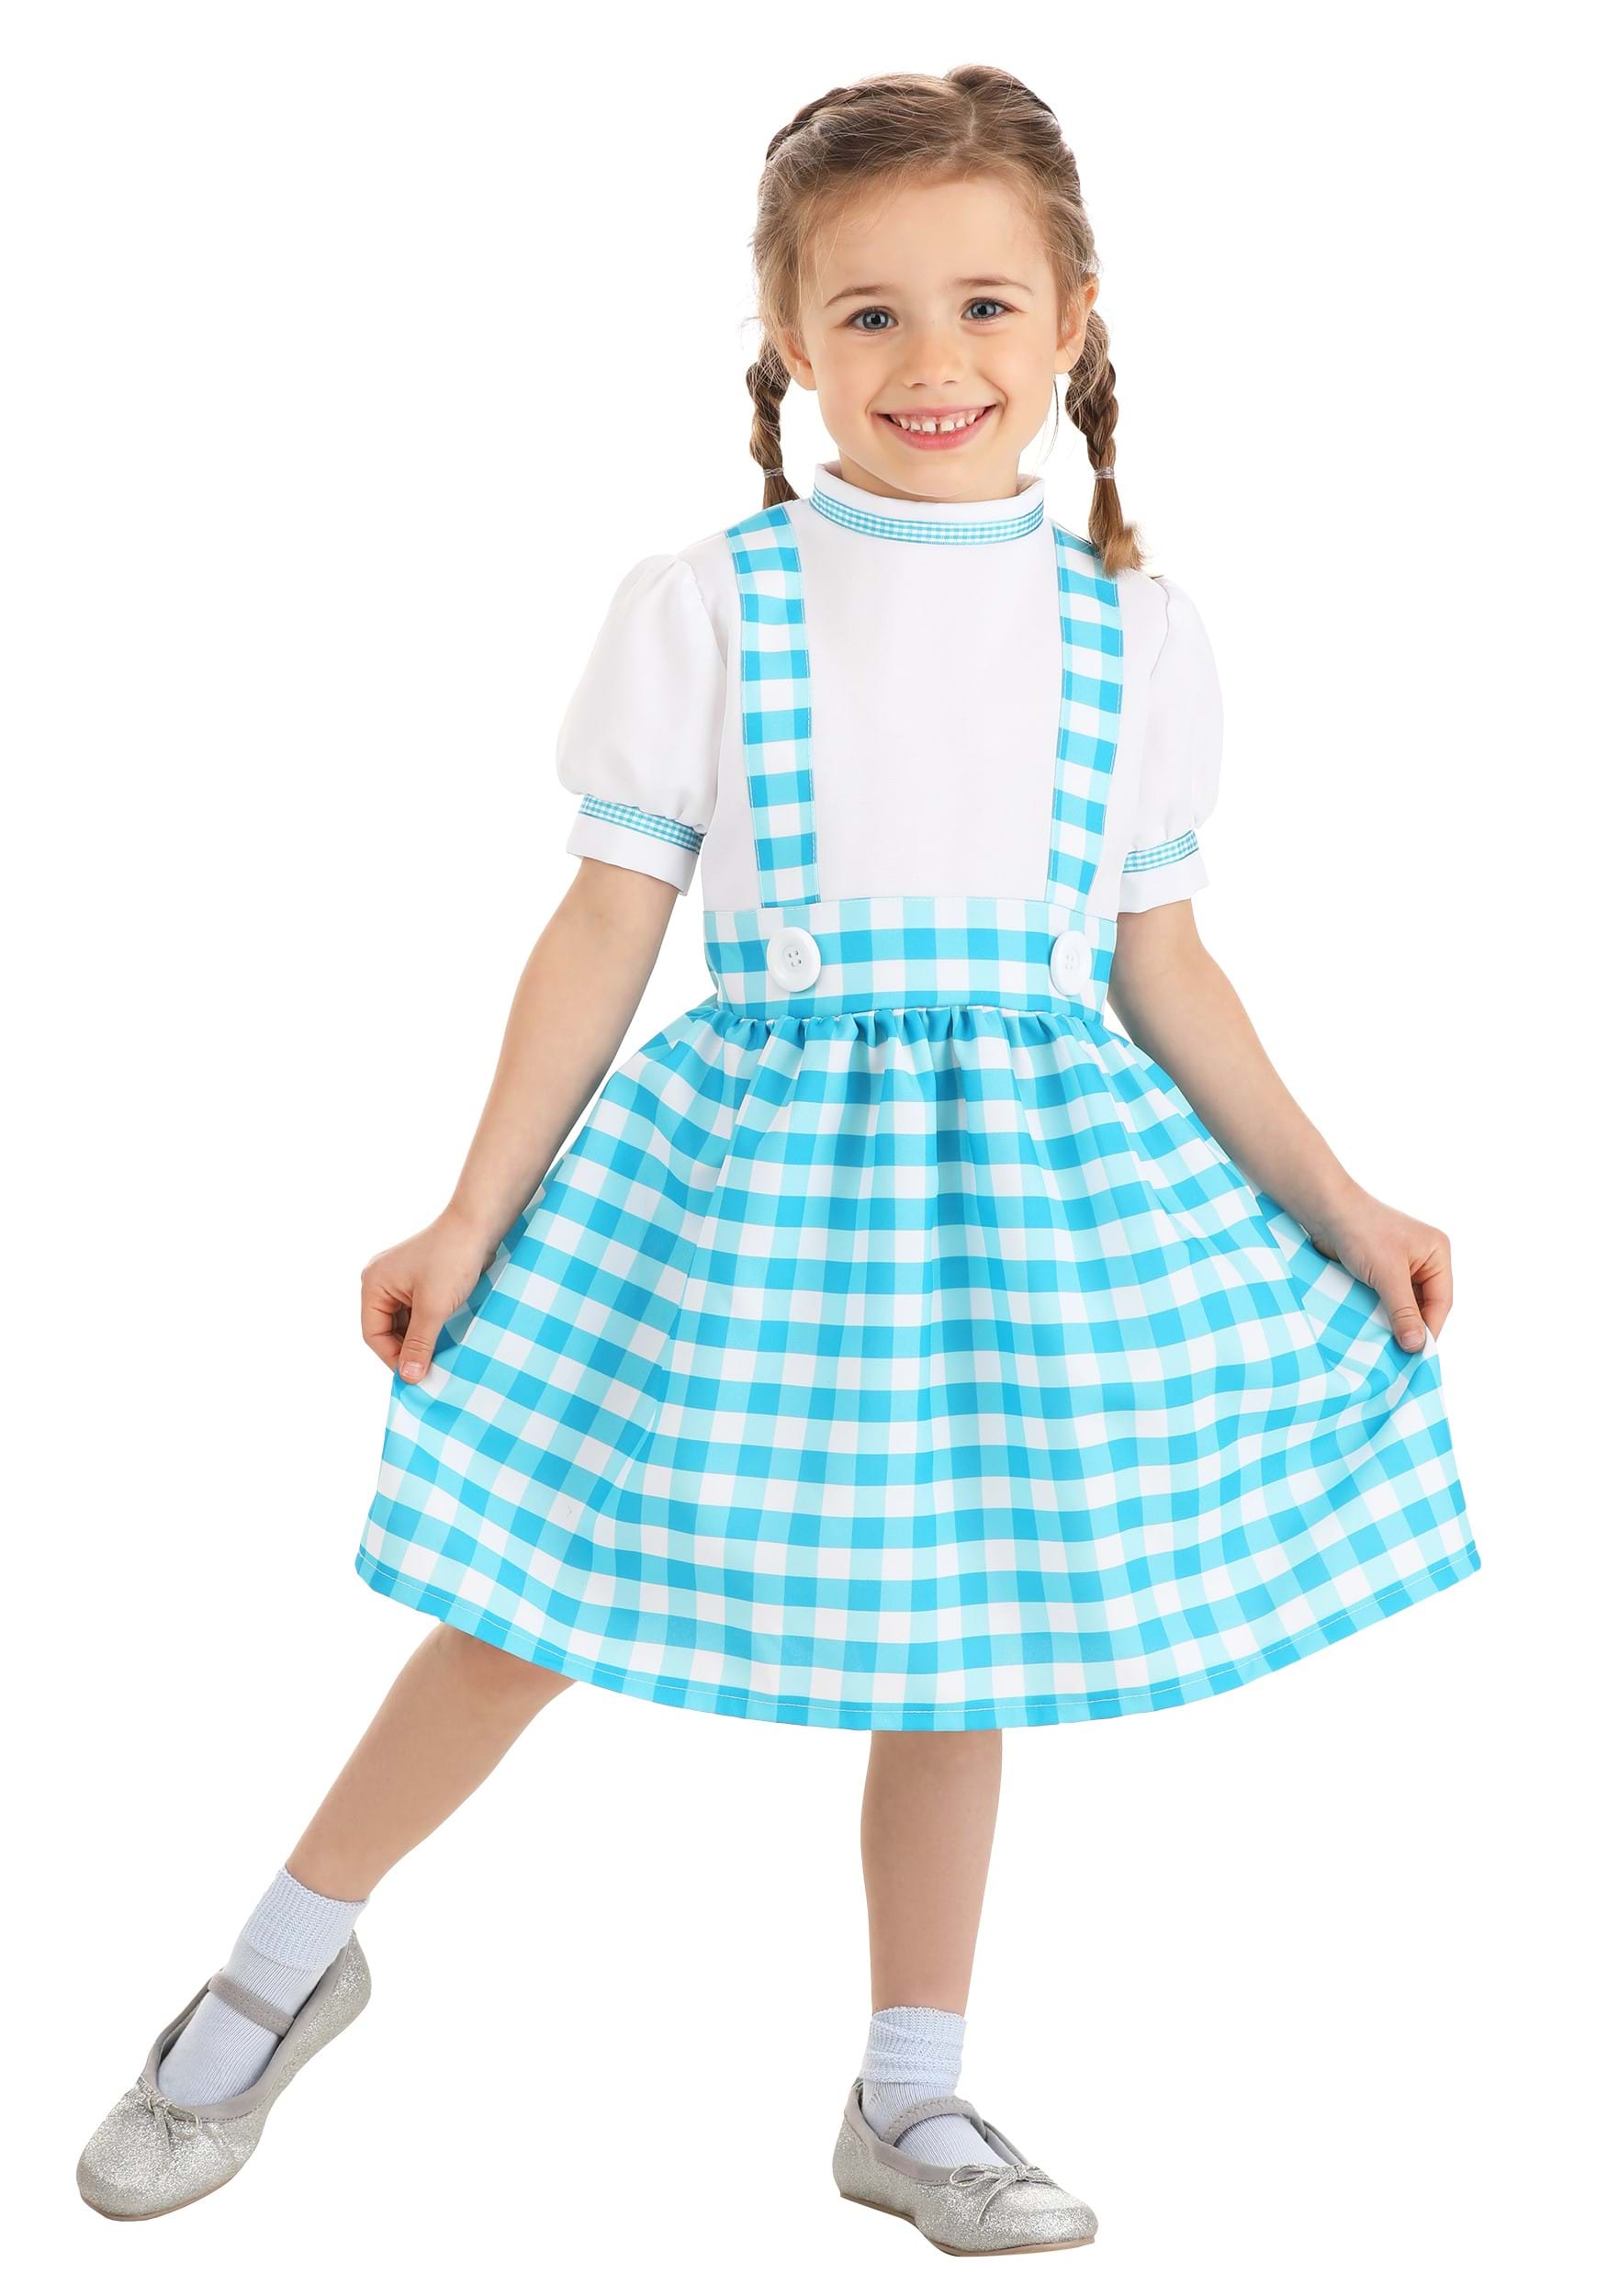 Gingham Kansas Girl Costume for Toddlers